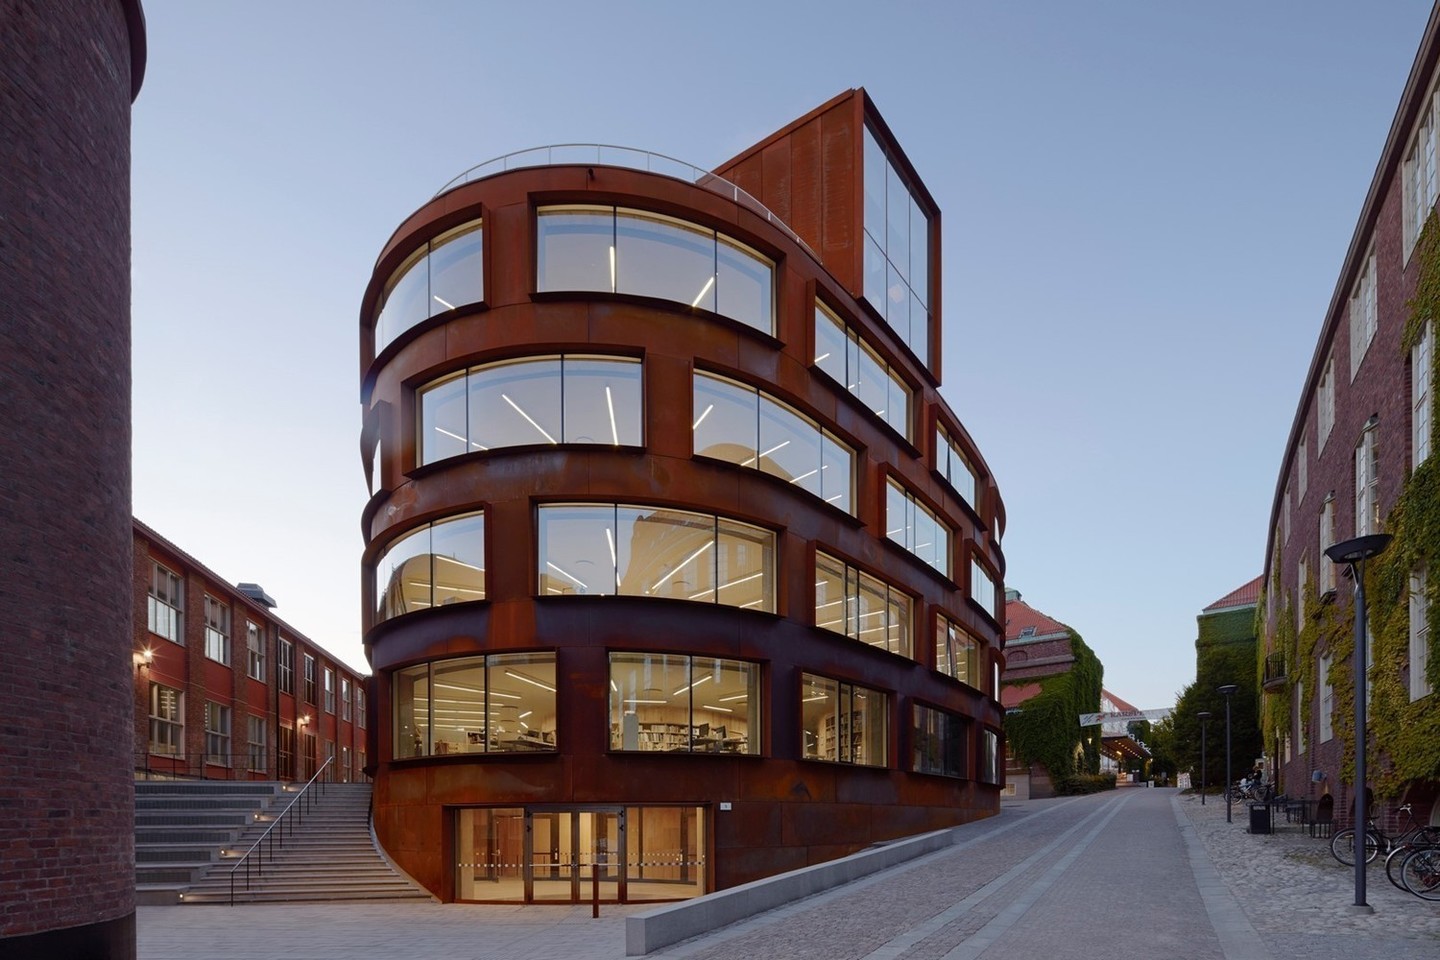 Geriausias švietimo įstaigos pastatas – Karališkojo technologijų instituto Architektūros mokykla,<br>„archdaily.com“ nuotr.